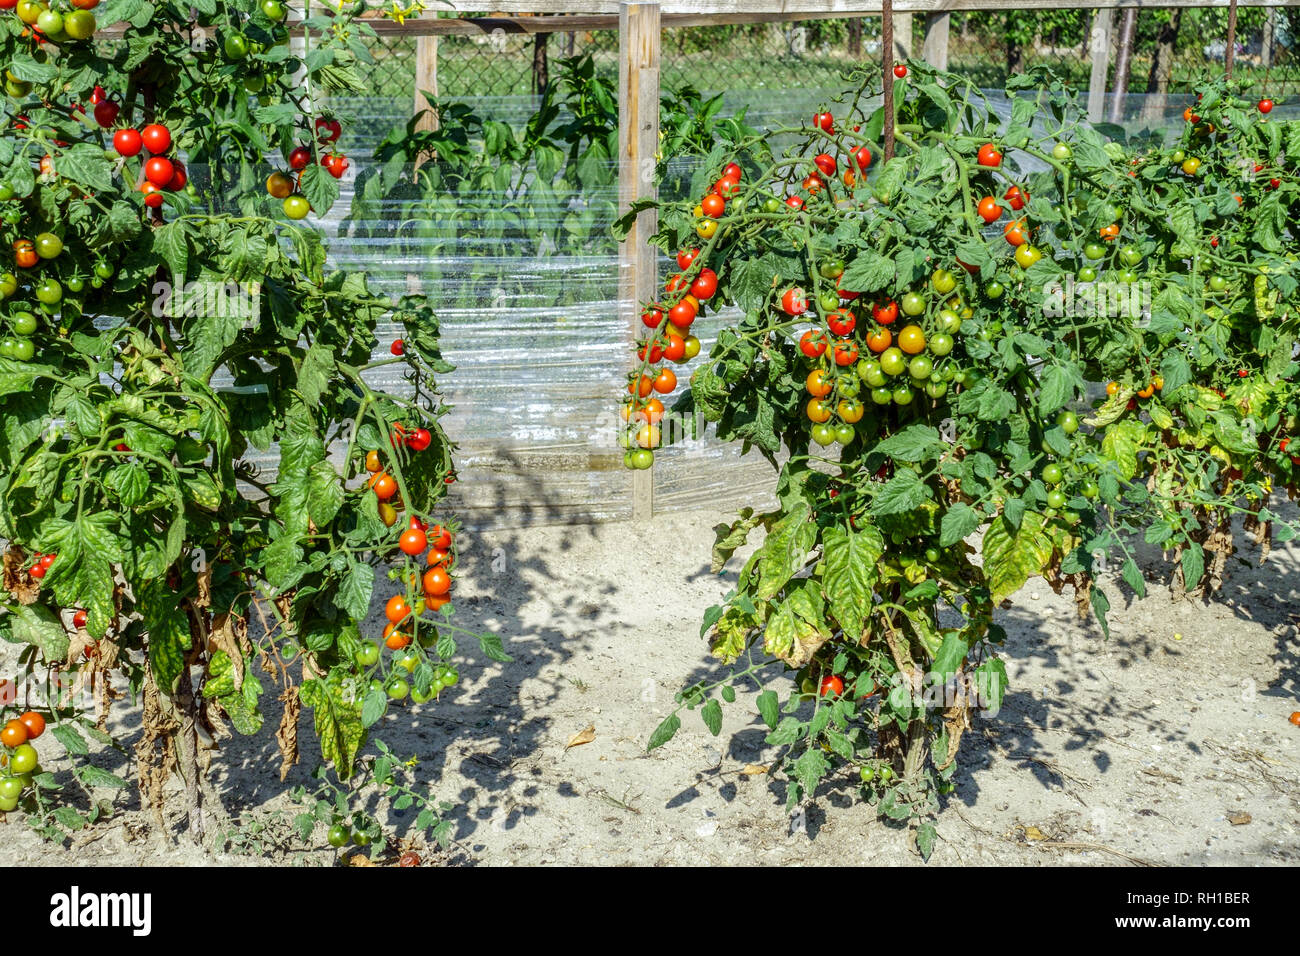 Tomates mûrissant sur le vin dans un potager cultivant des légumes Banque D'Images